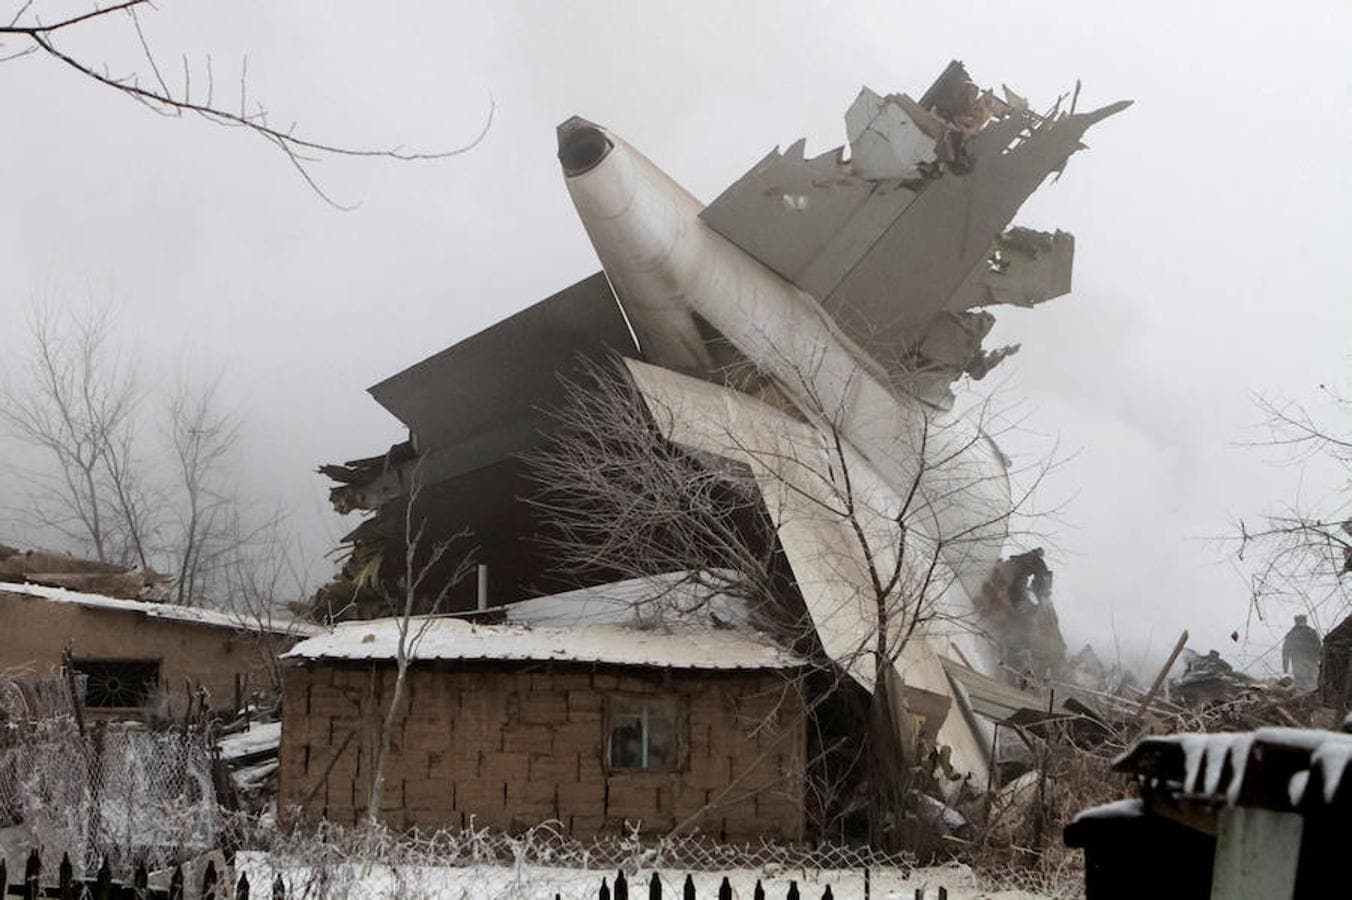 El aeroplano se precipitó al suelo en una zona poblada y destrozado al menos 32 casas.